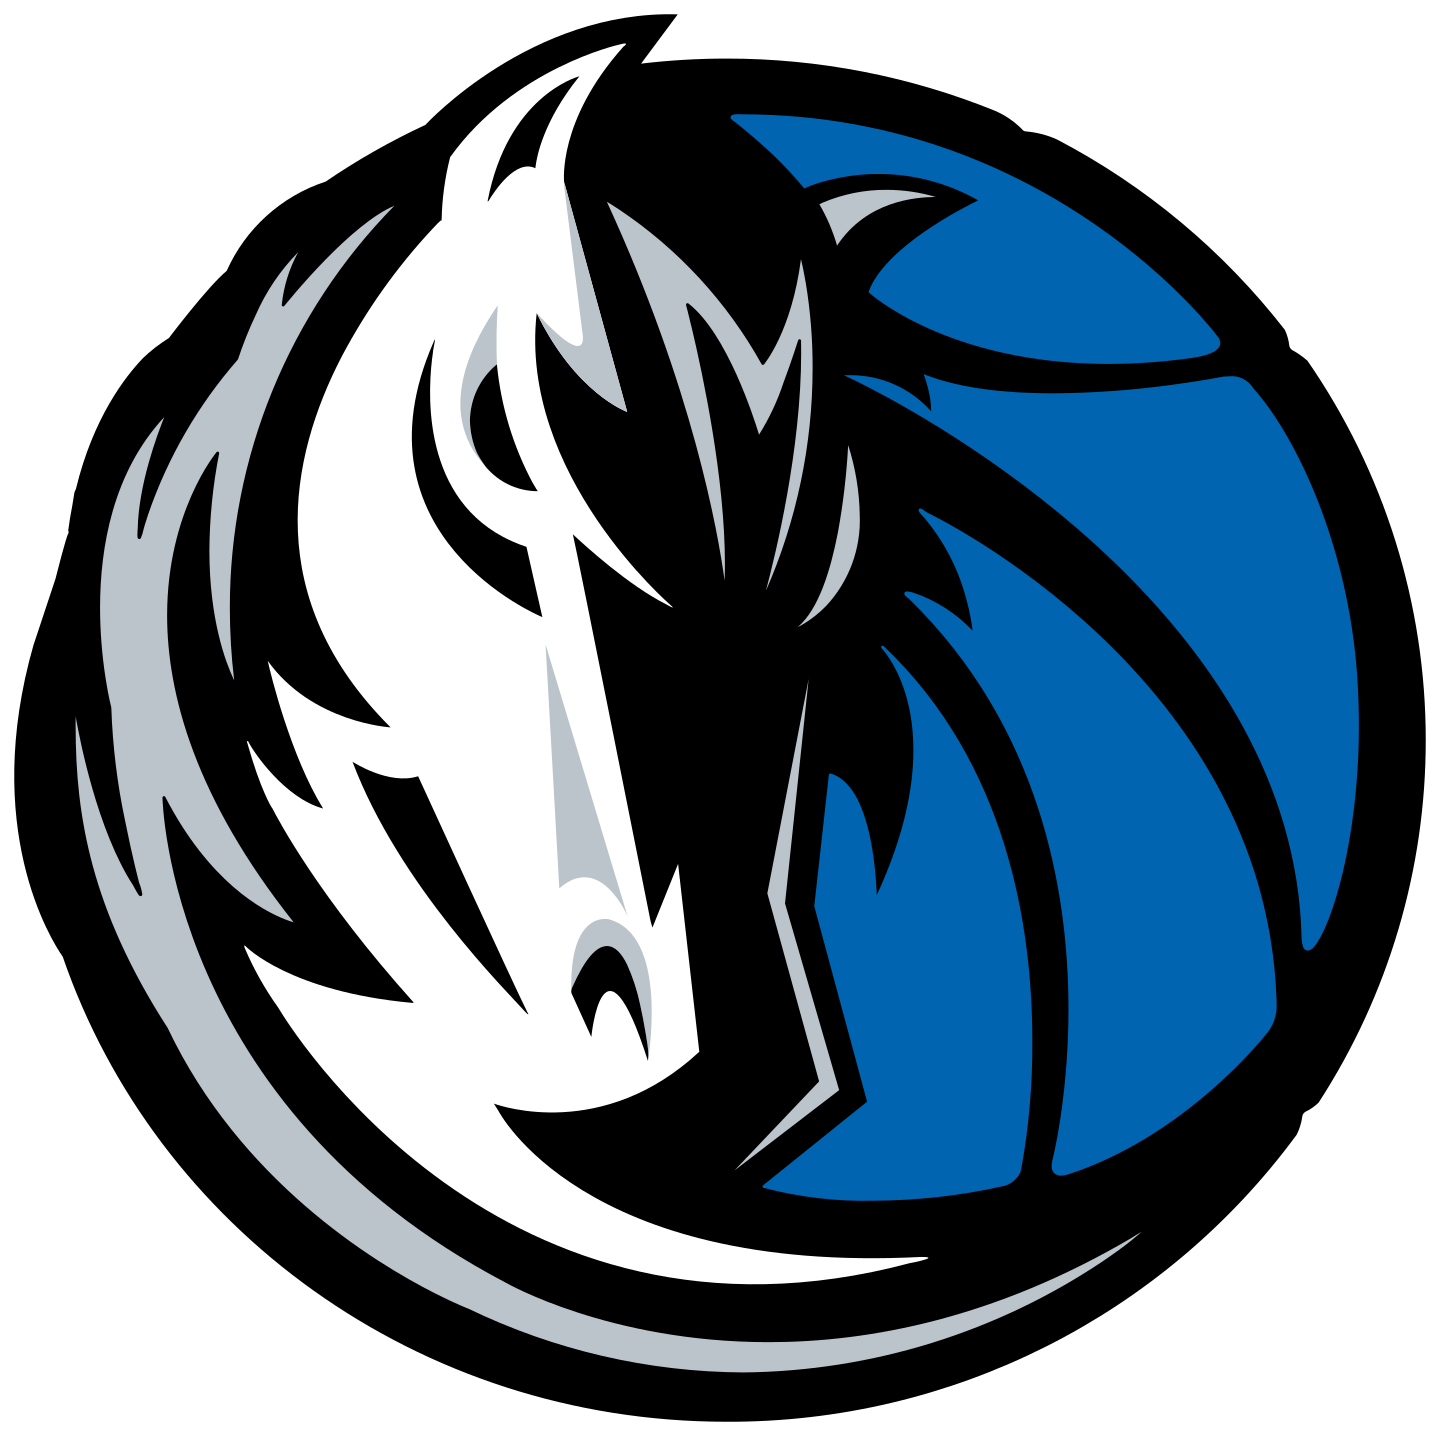 dallas mavericks logo 2 - Dallas Mavericks Logo